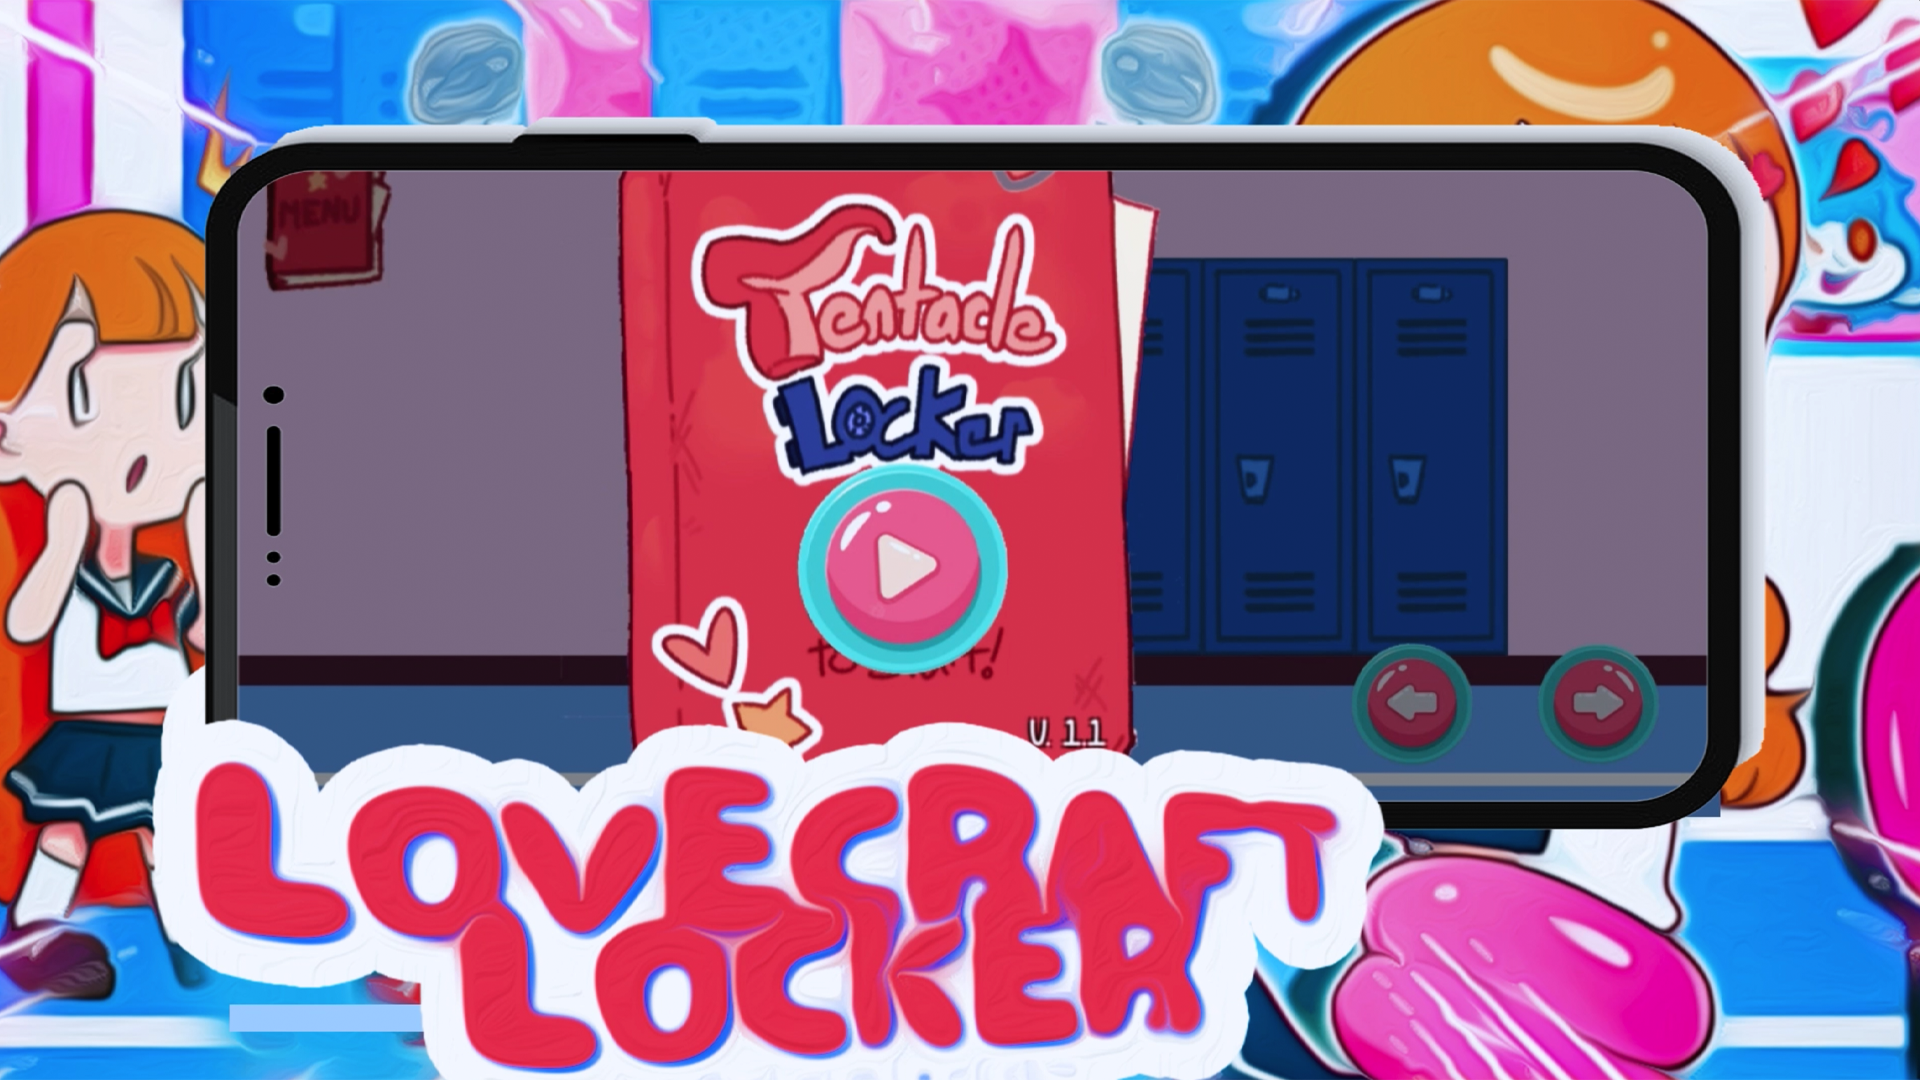 LoveCraft Locker Game screenshot game